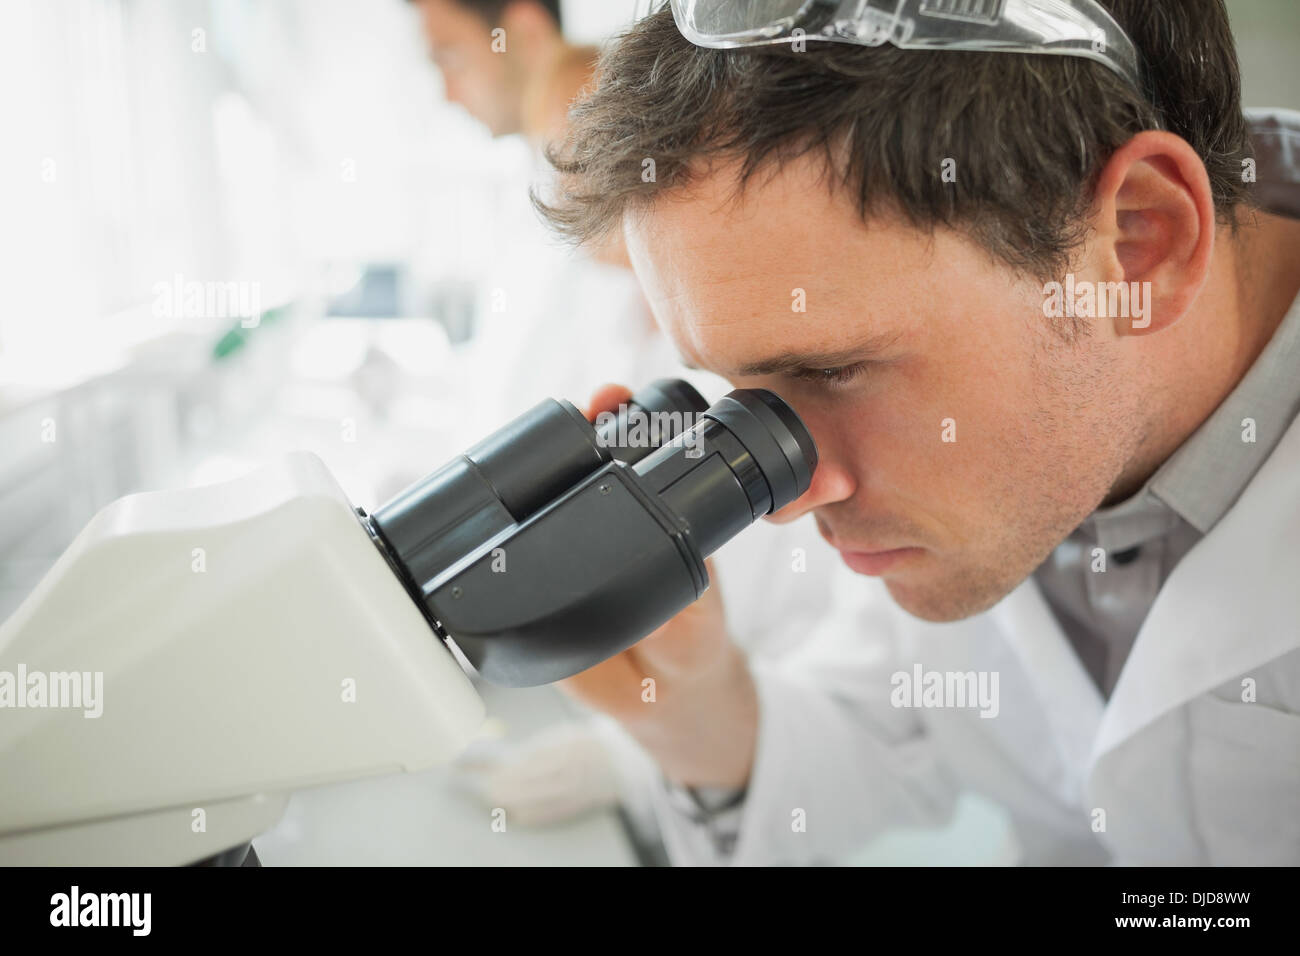 Jeune homme à la recherche scientifique à l'aide d'un microscope Banque D'Images